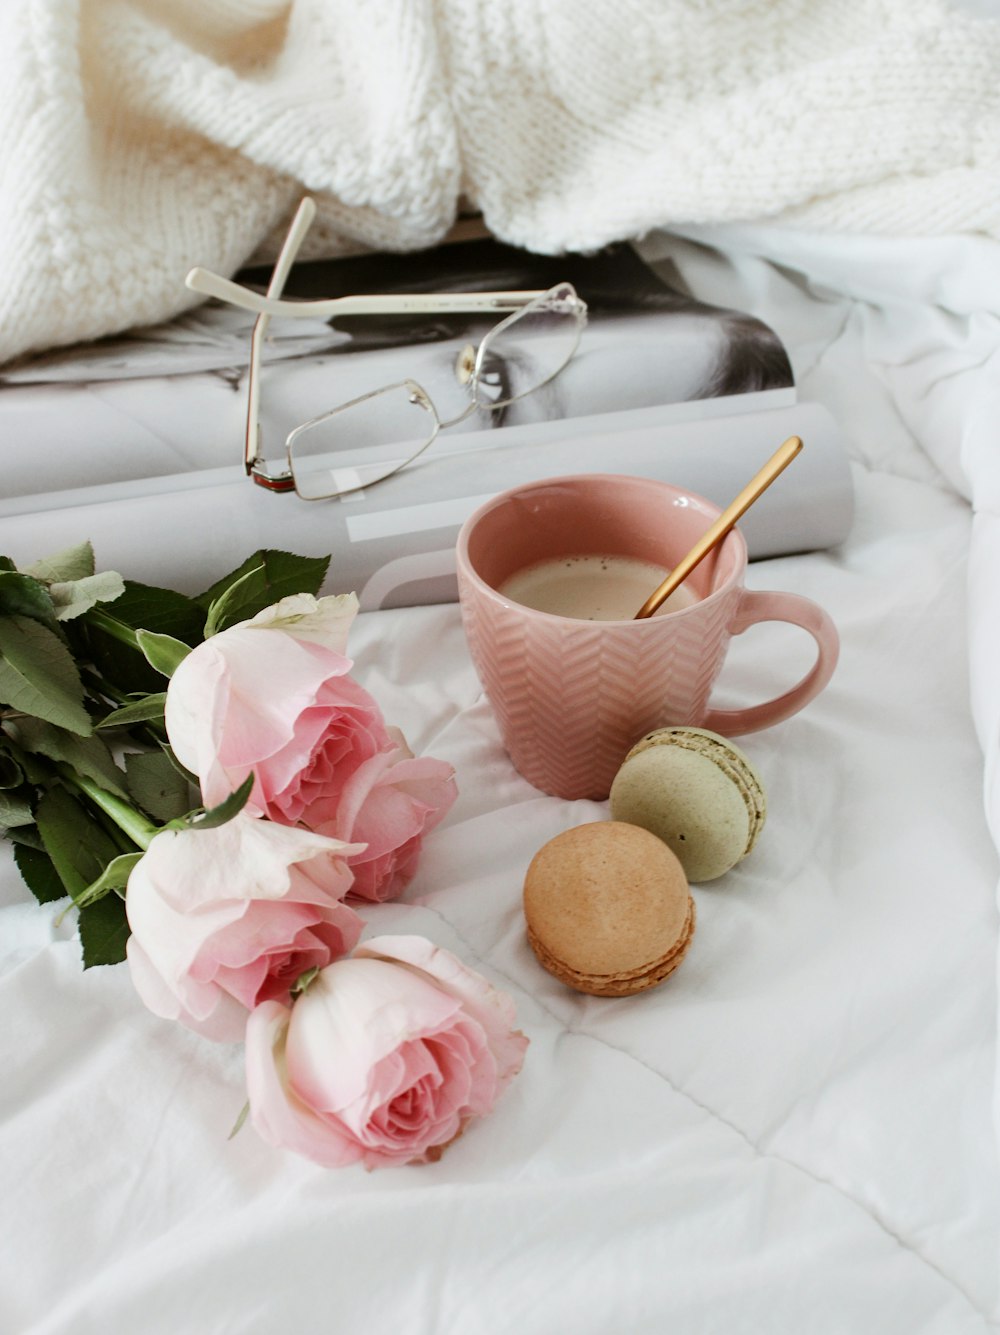 Tazza da tè in ceramica rosa e bianca su tessuto bianco